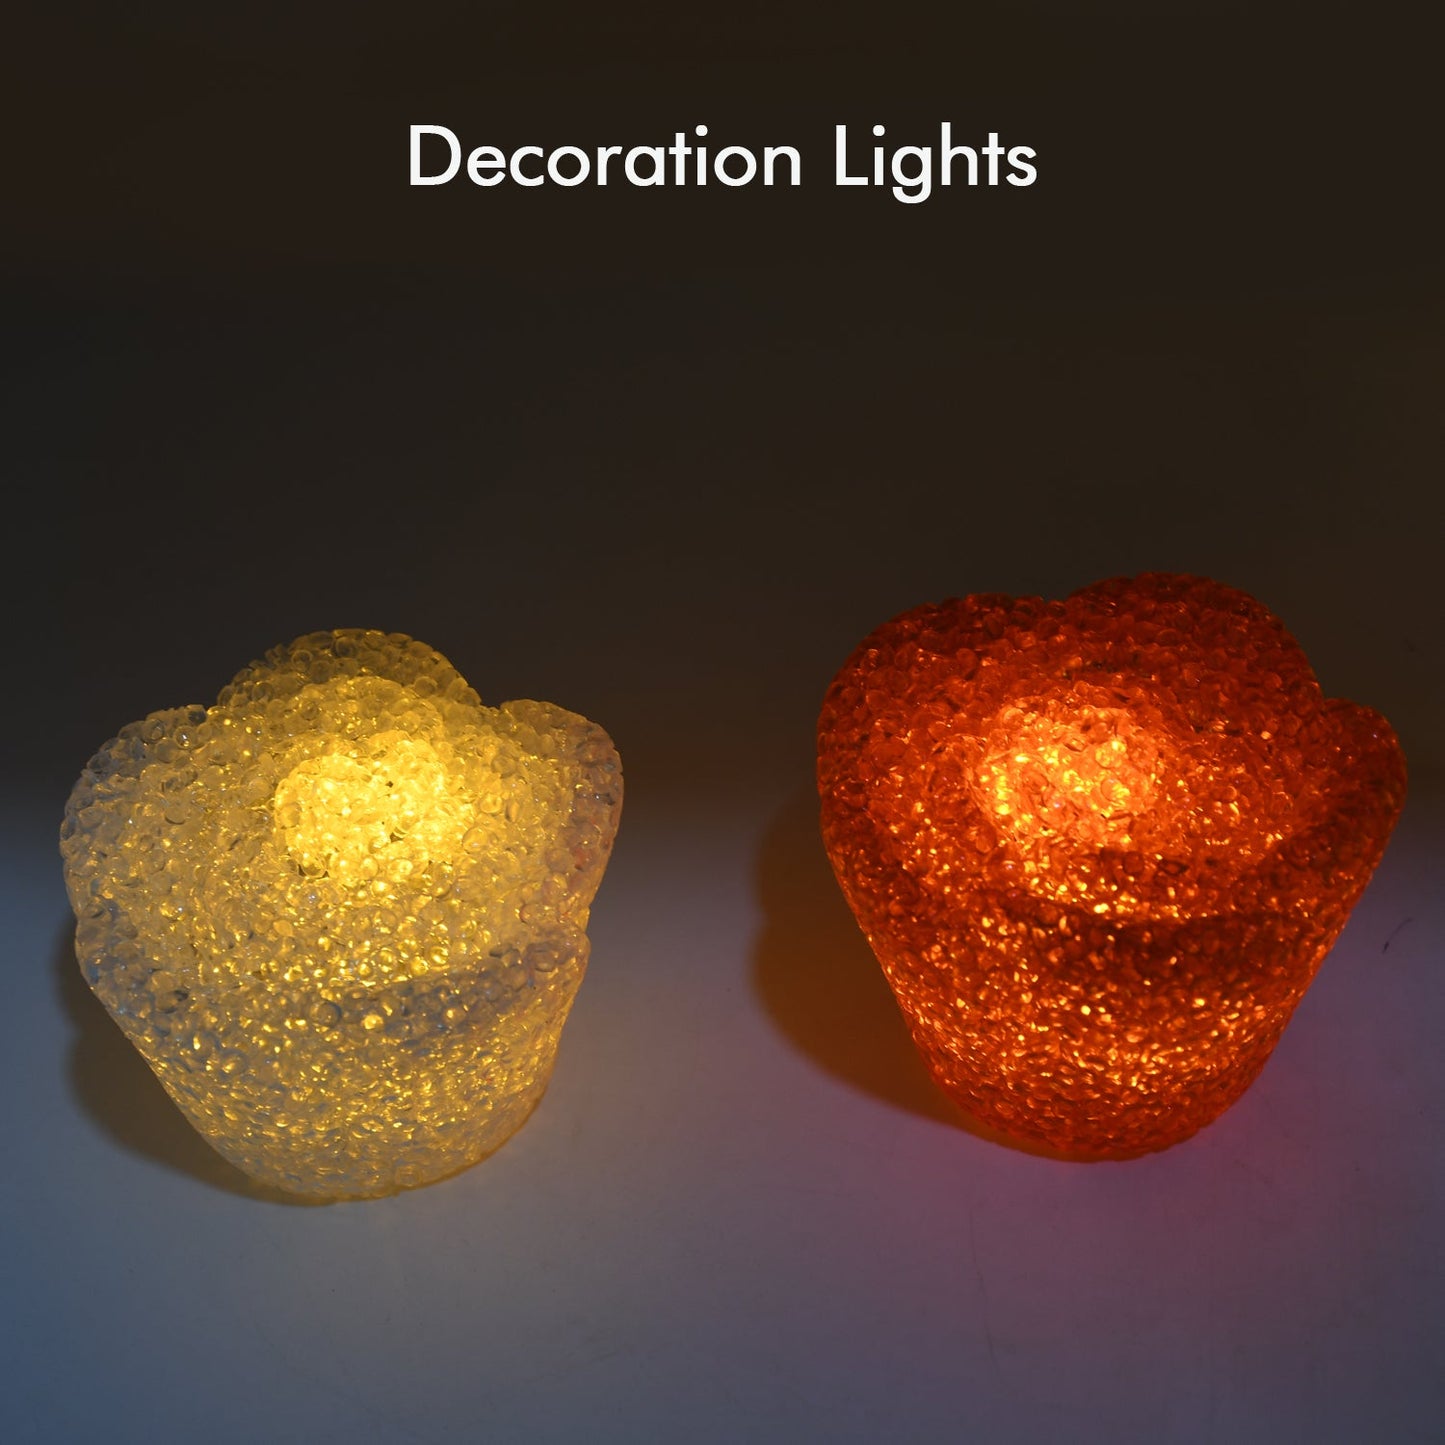 7995A MIX DESIGN MULTI SHAPE SMALL LIGHT LAMPS LED SHAPE CRYSTAL NIGHT LIGHT LAMP (1 PC )